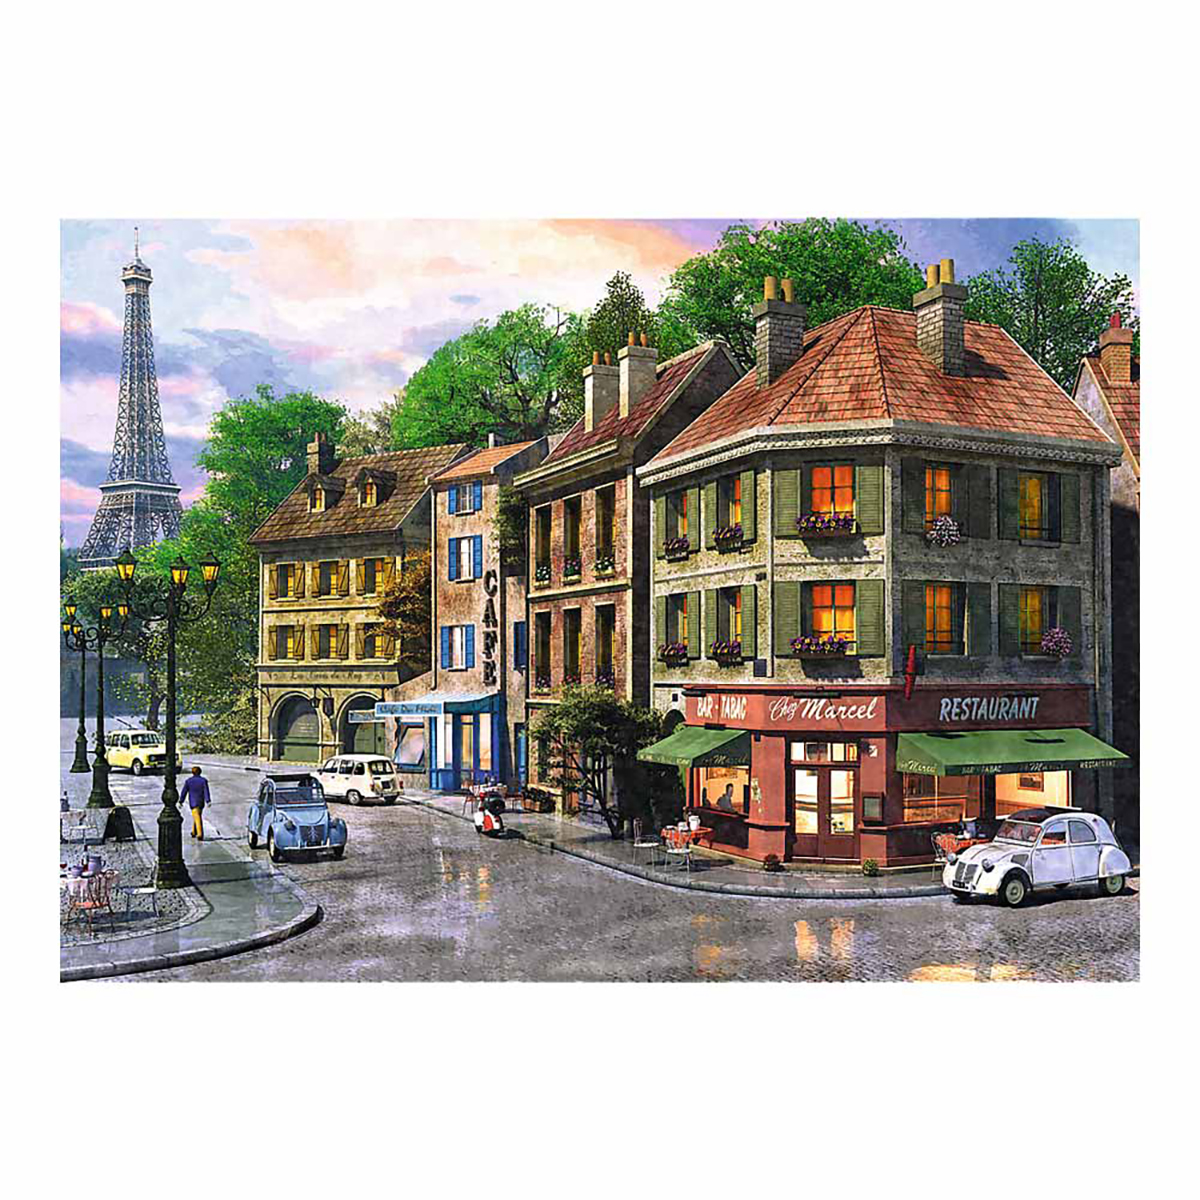 TREFL StraÃŸe Teile in Puzzle 6500 Paris Puzzle - 1 - 6000